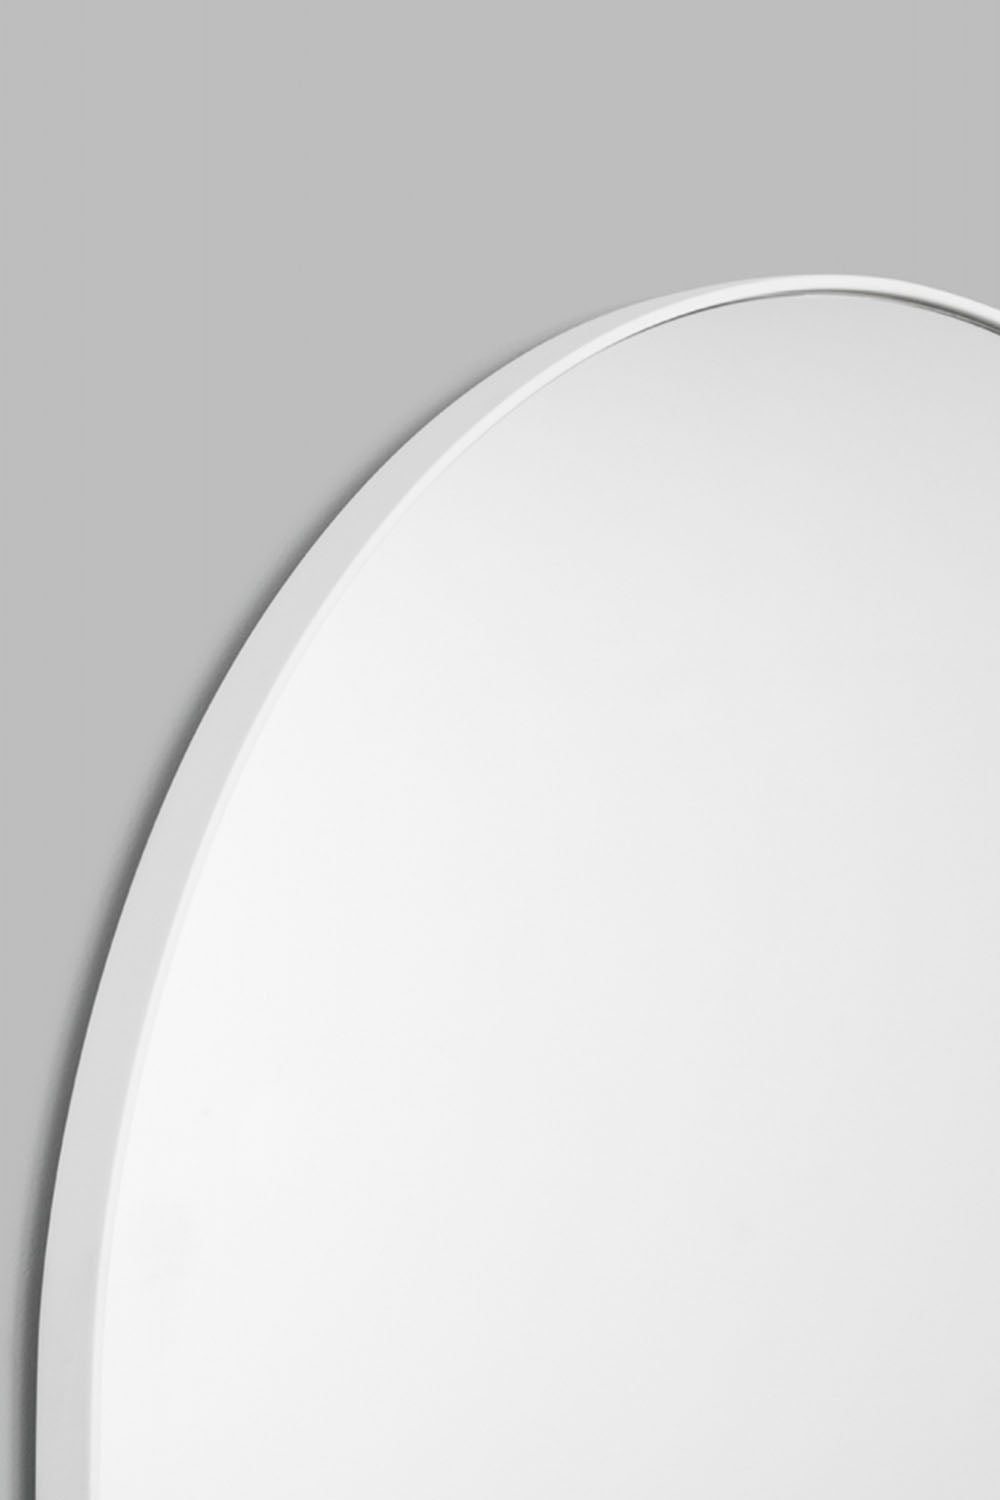 Bjorn Arch Floor Mirror - White